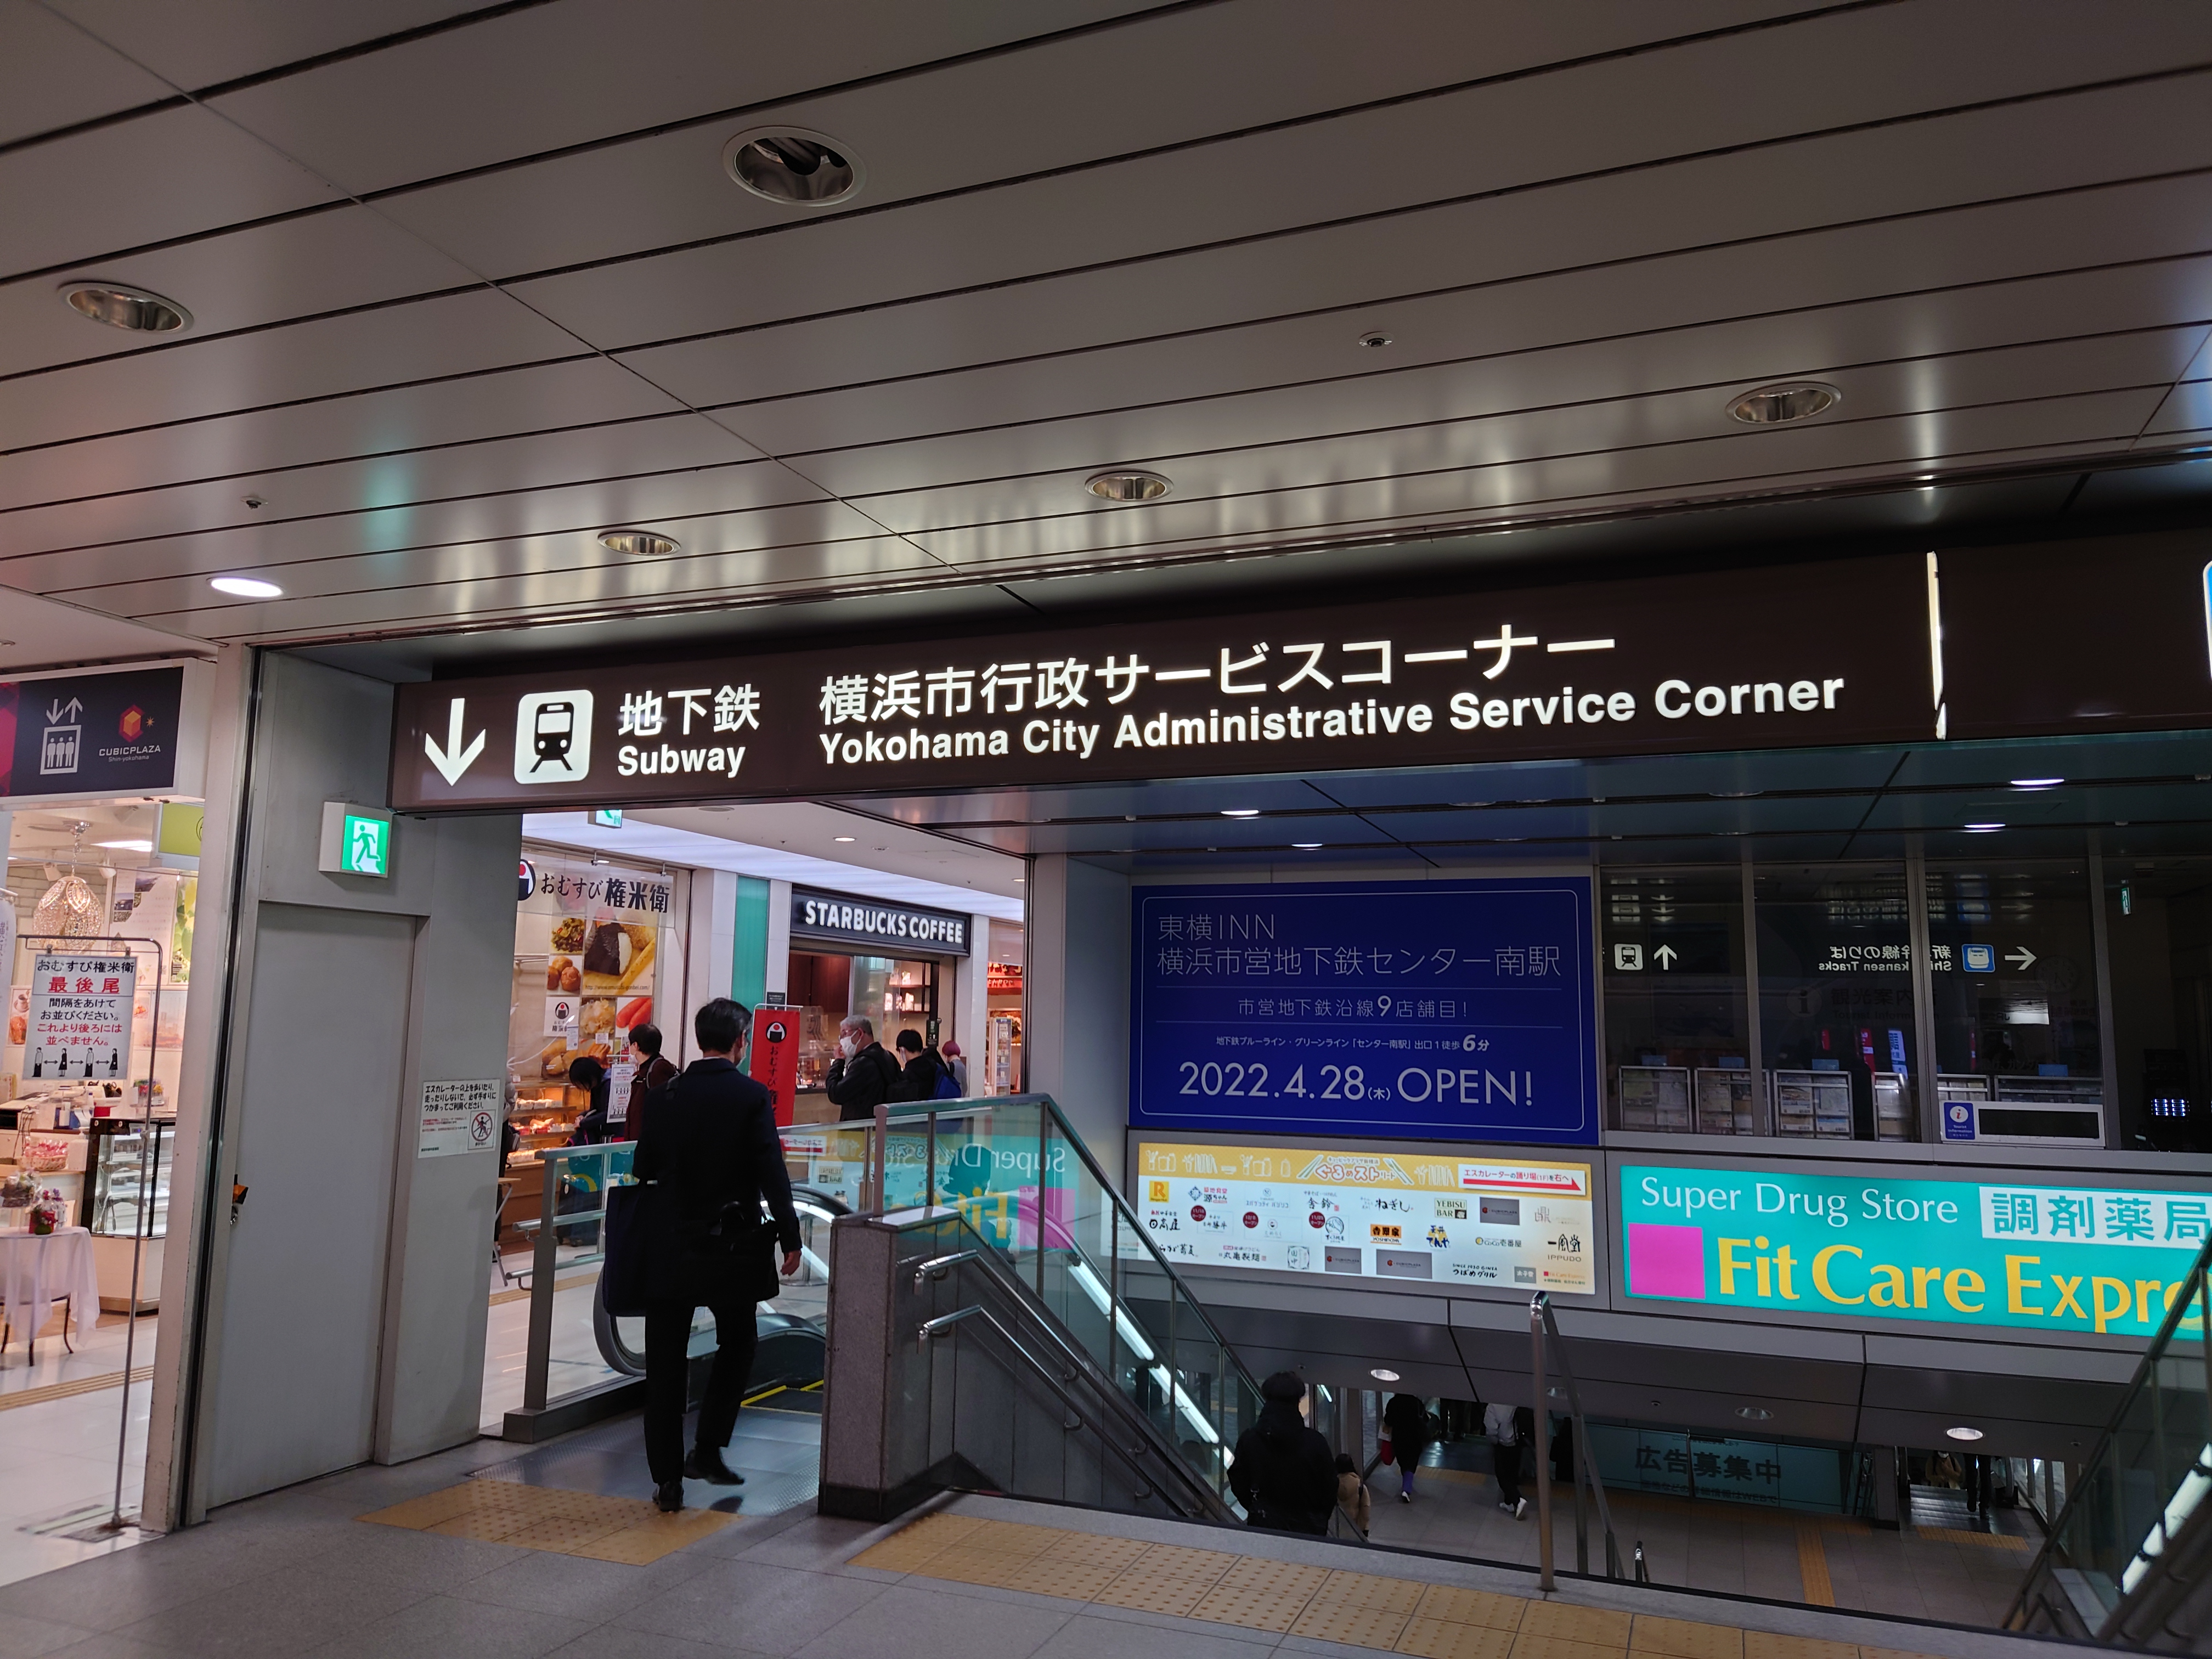 新横浜駅北口から通じる横浜市営地下鉄の階段方面